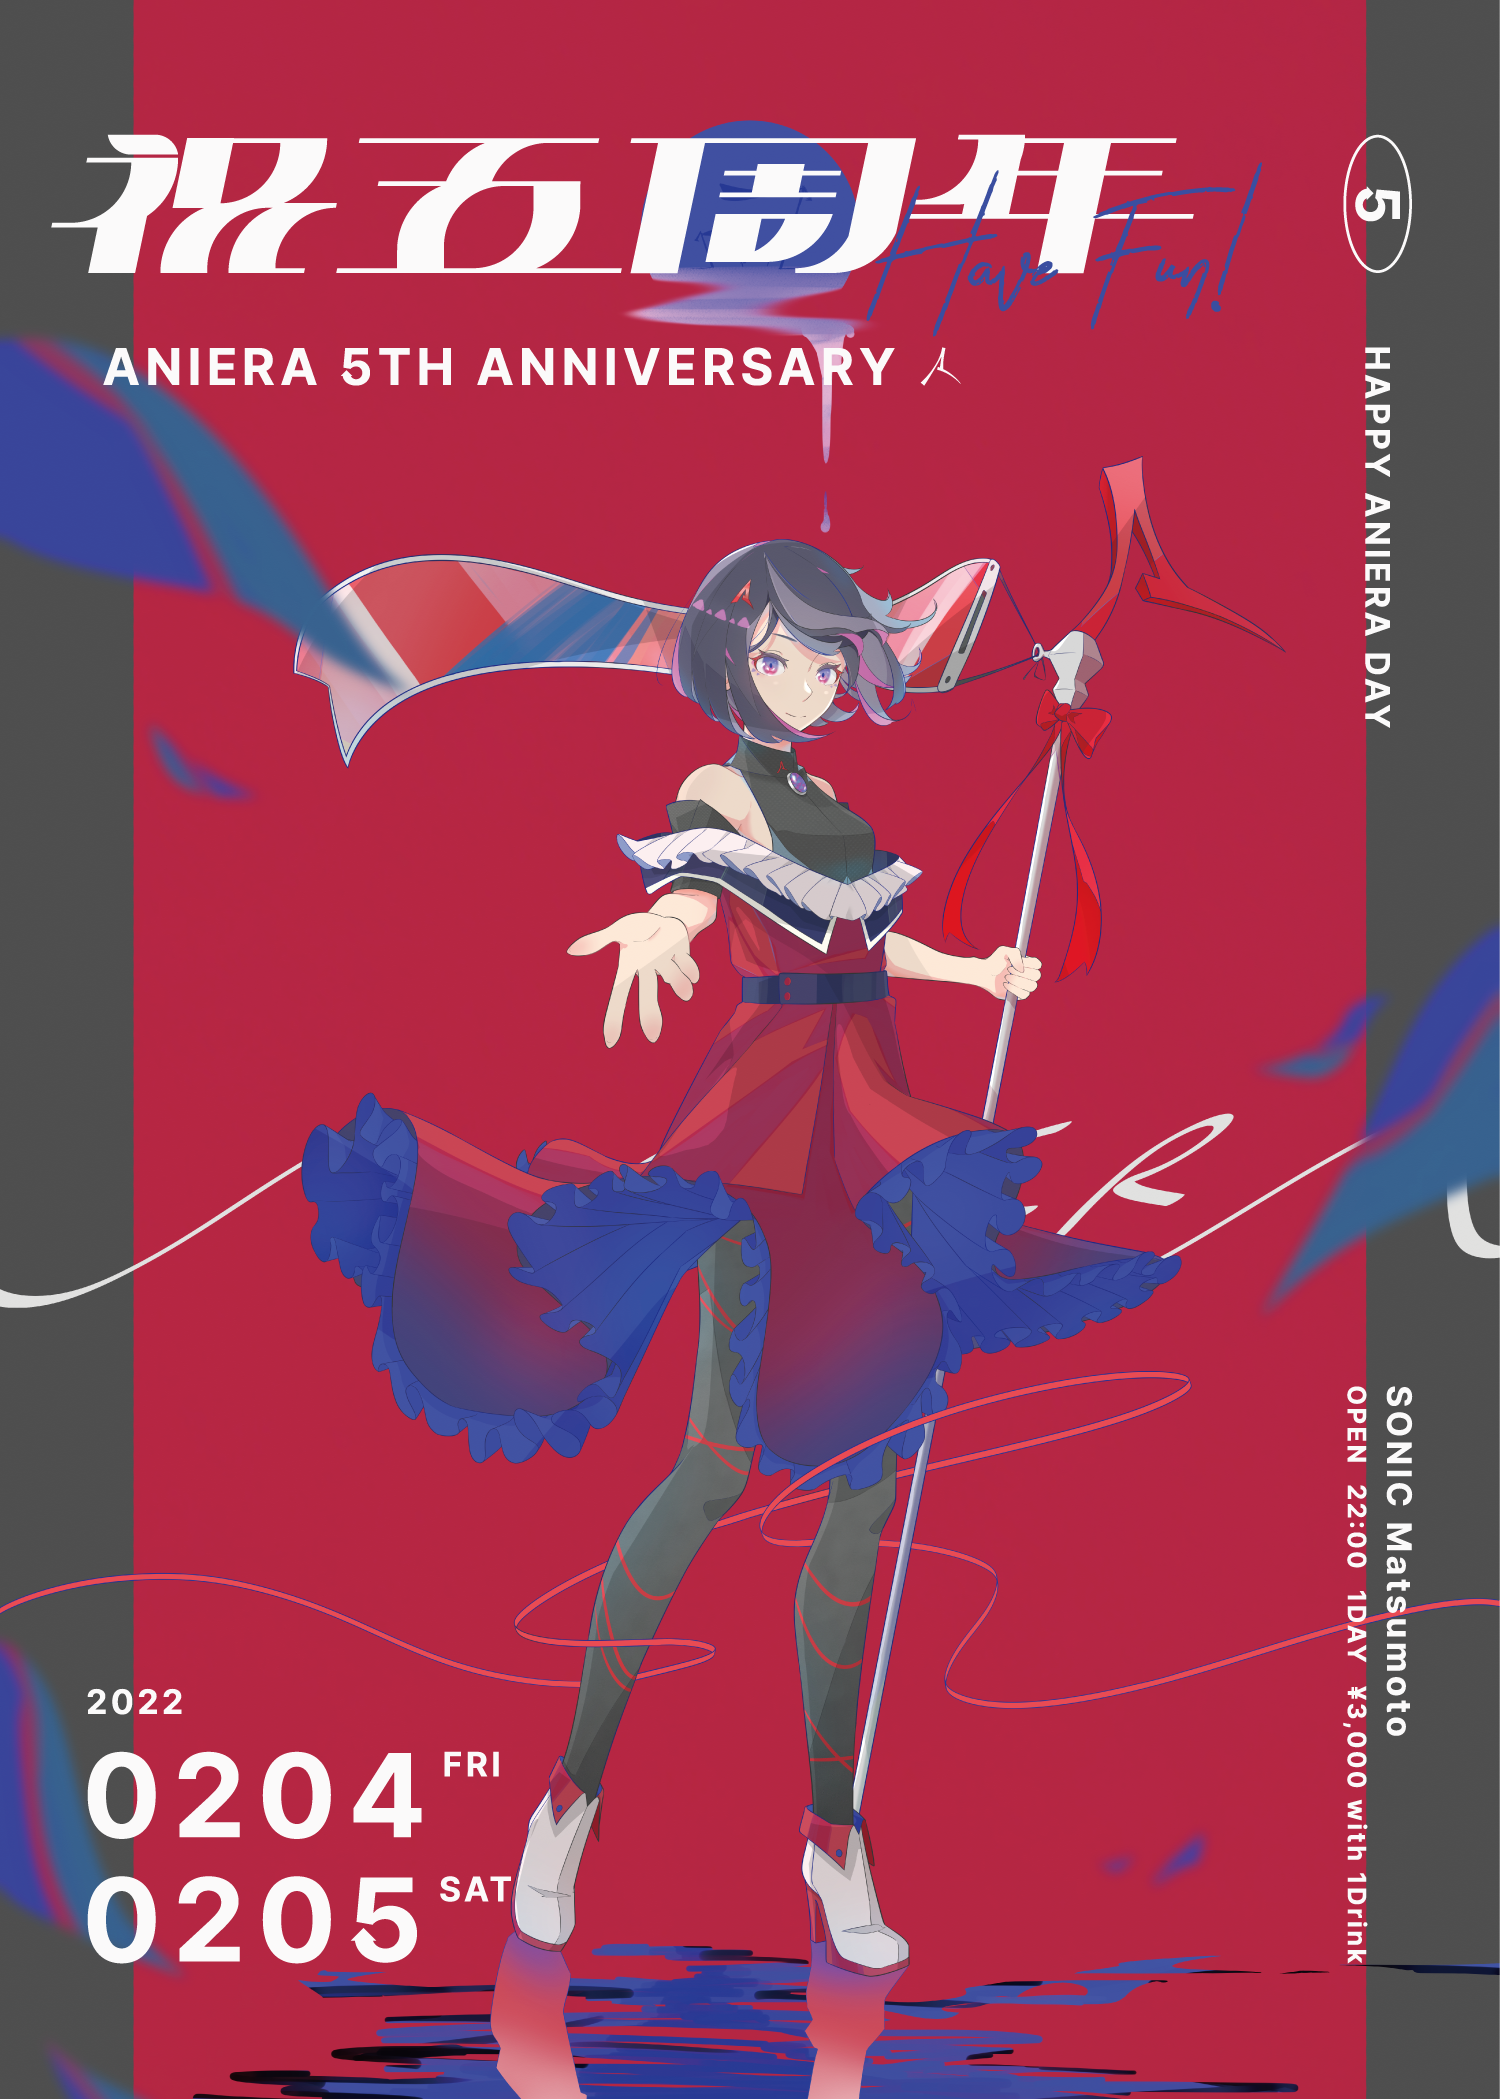 【祝５周年】ANIERA 5th ANNIVERSARY PARTY 2月4日・5日の2日間で開催決定！